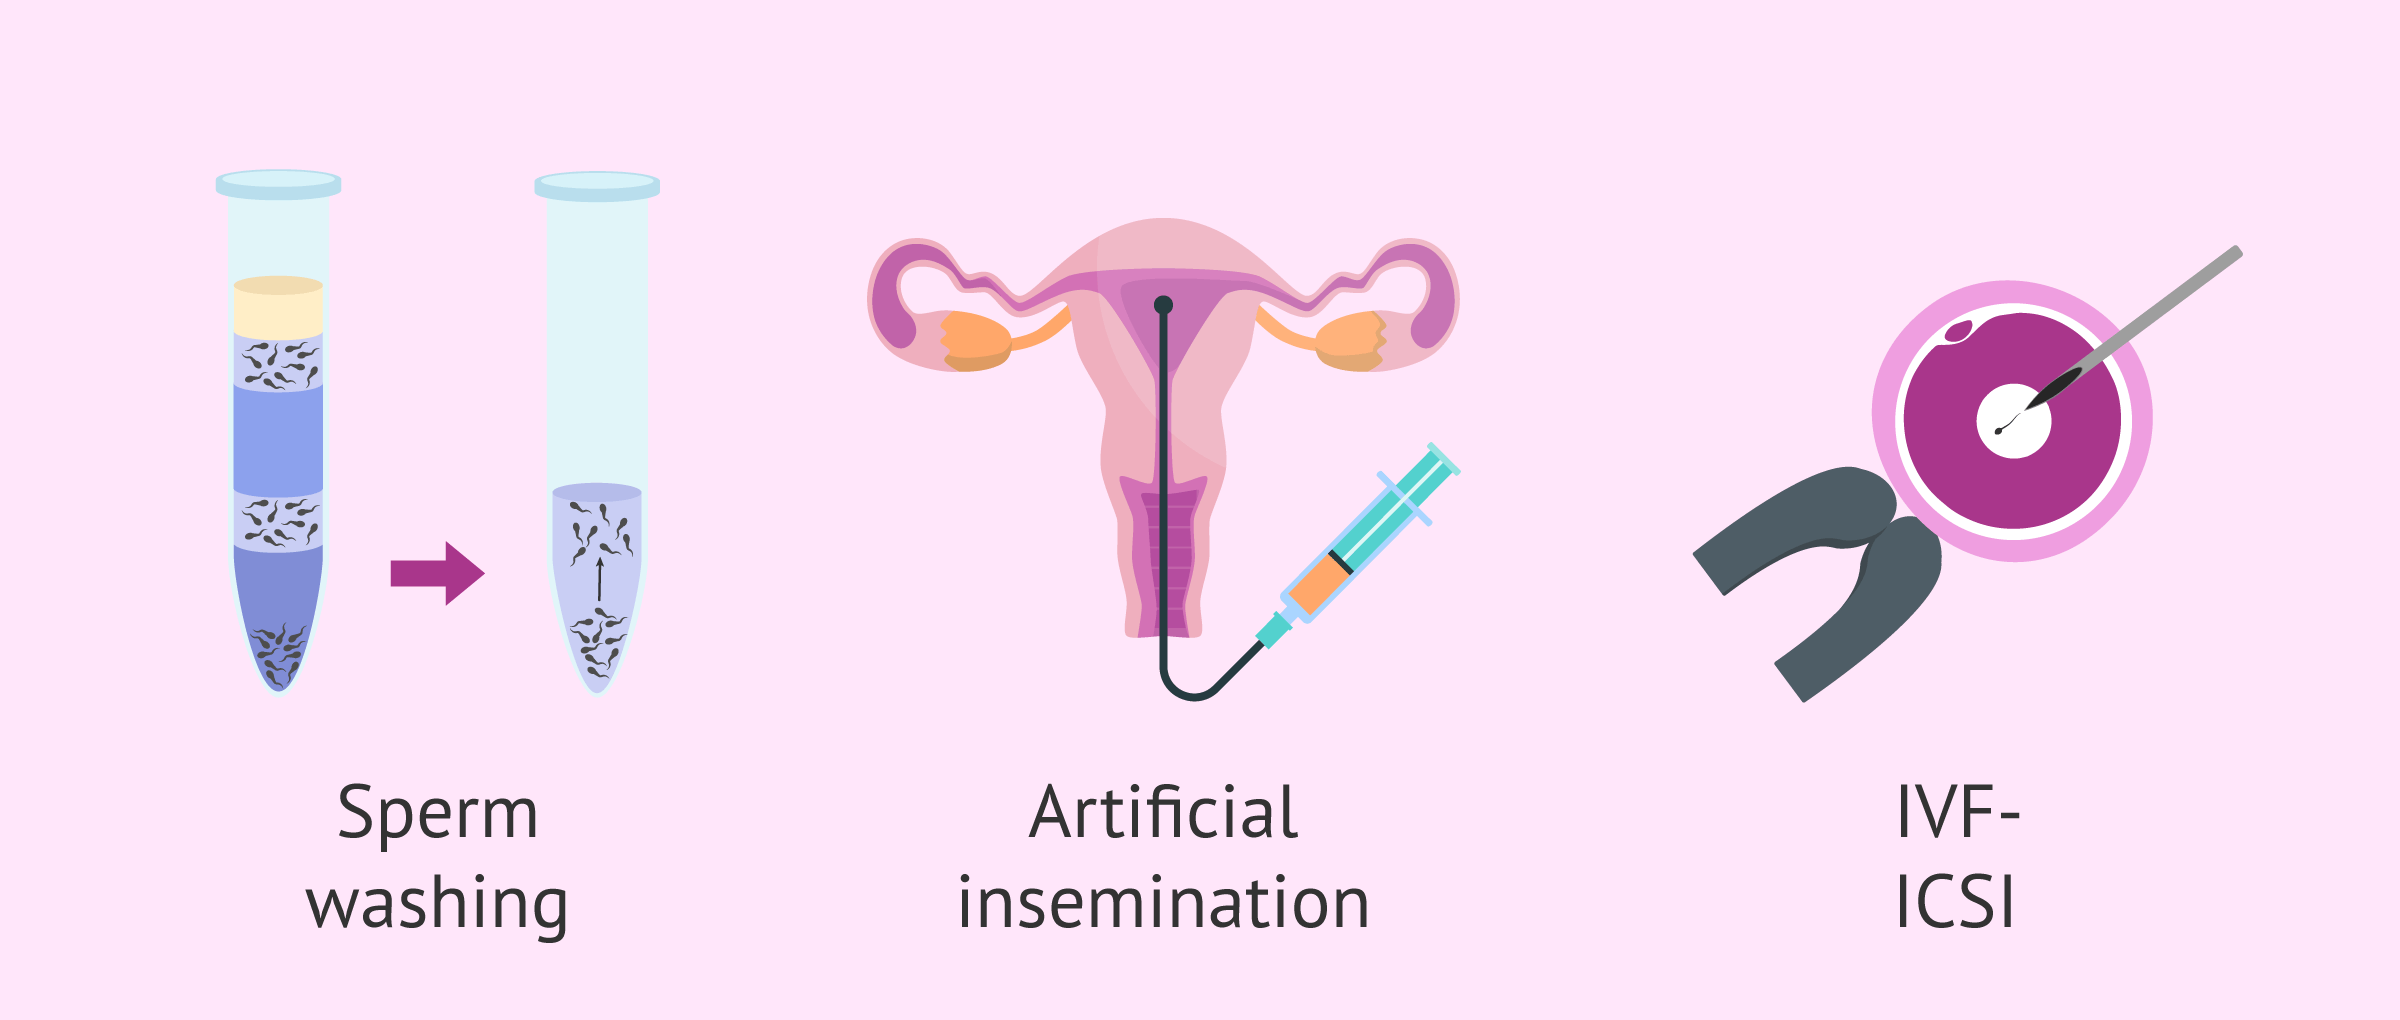 9 dias post inseminacion artificial